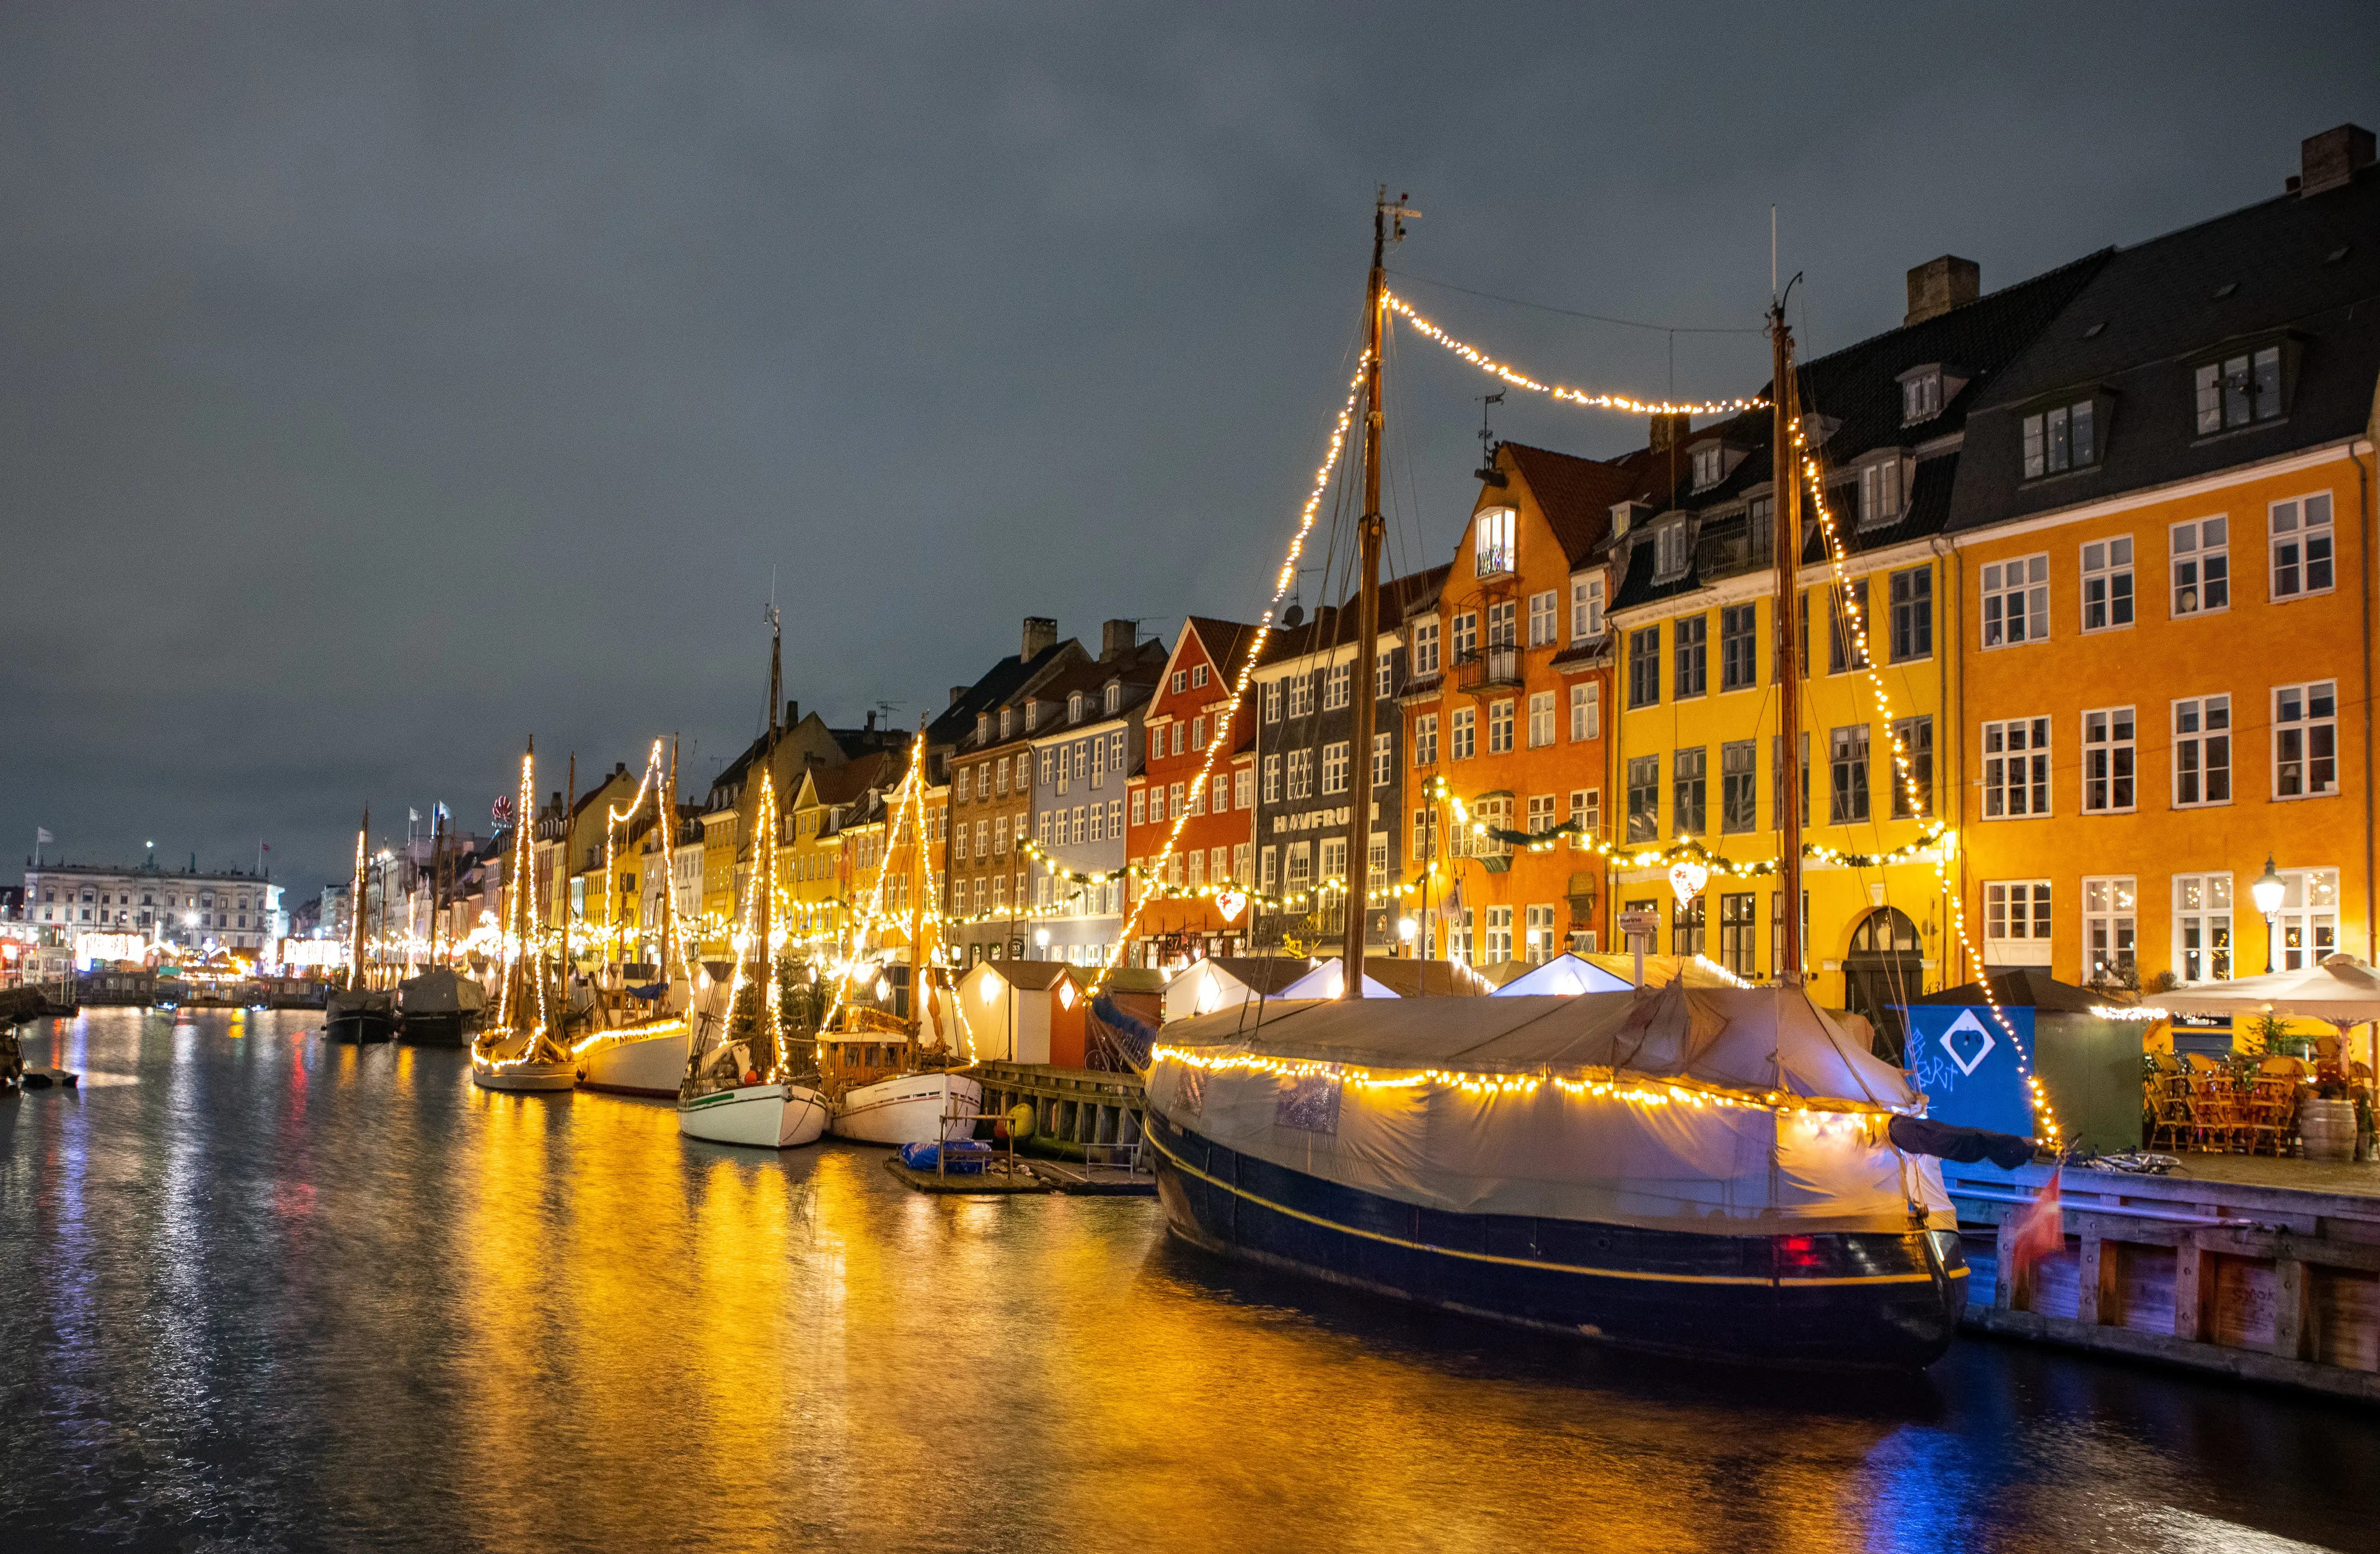 Nyhavn, Copenhagen in Christmas Illumination